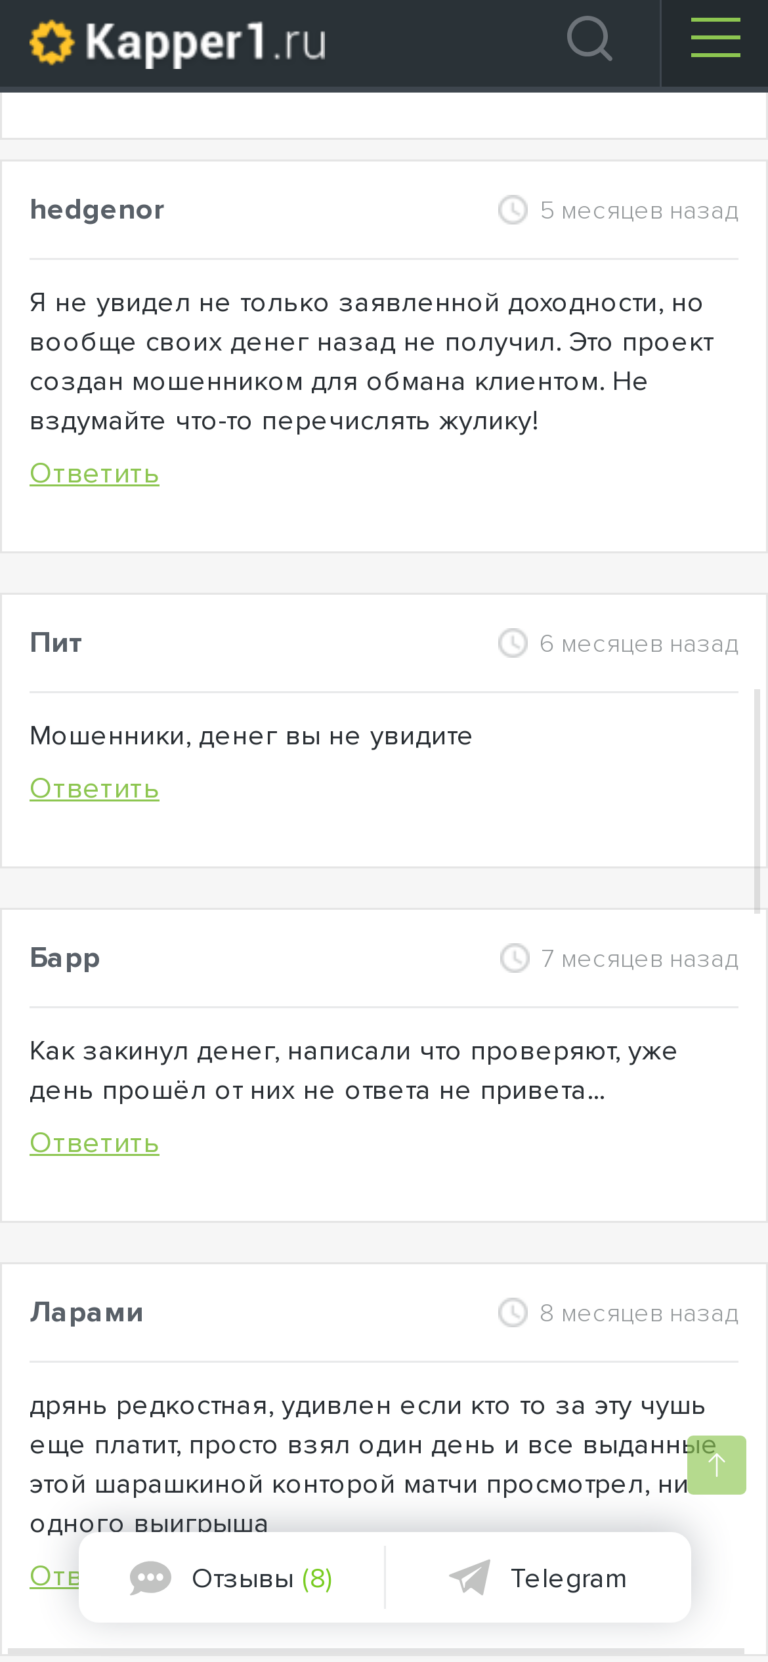 Prognoz-garant.ru реальные отзывы